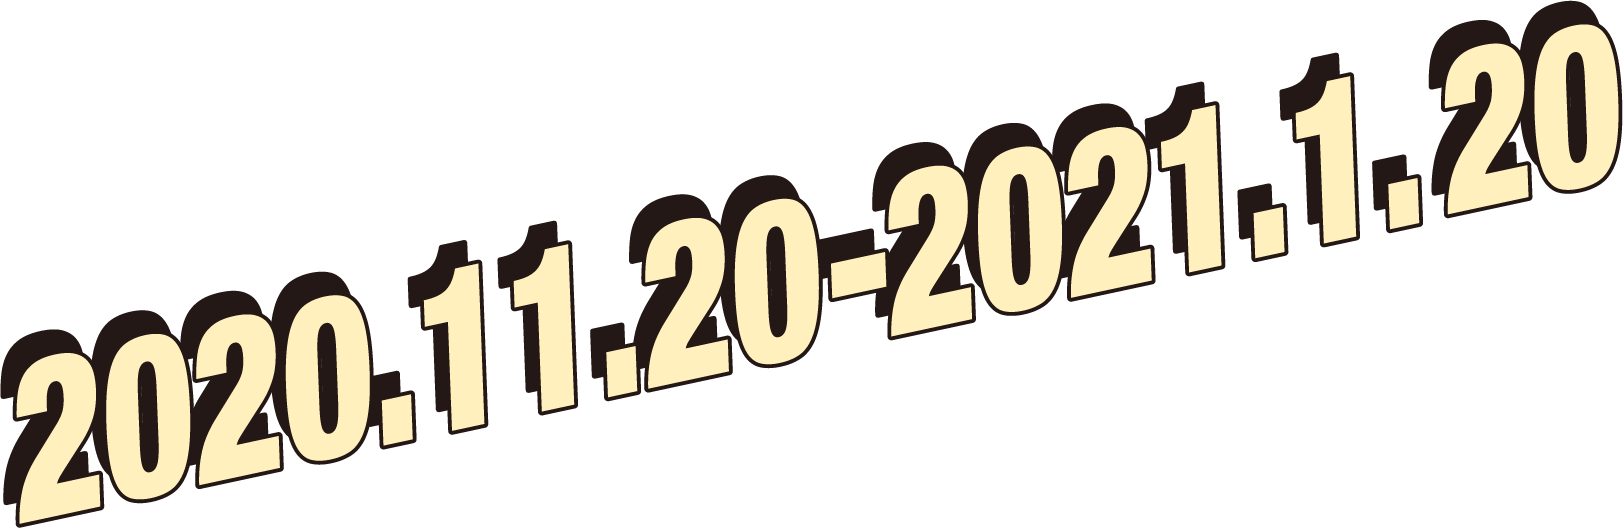 2020.11.20-2021.1.20